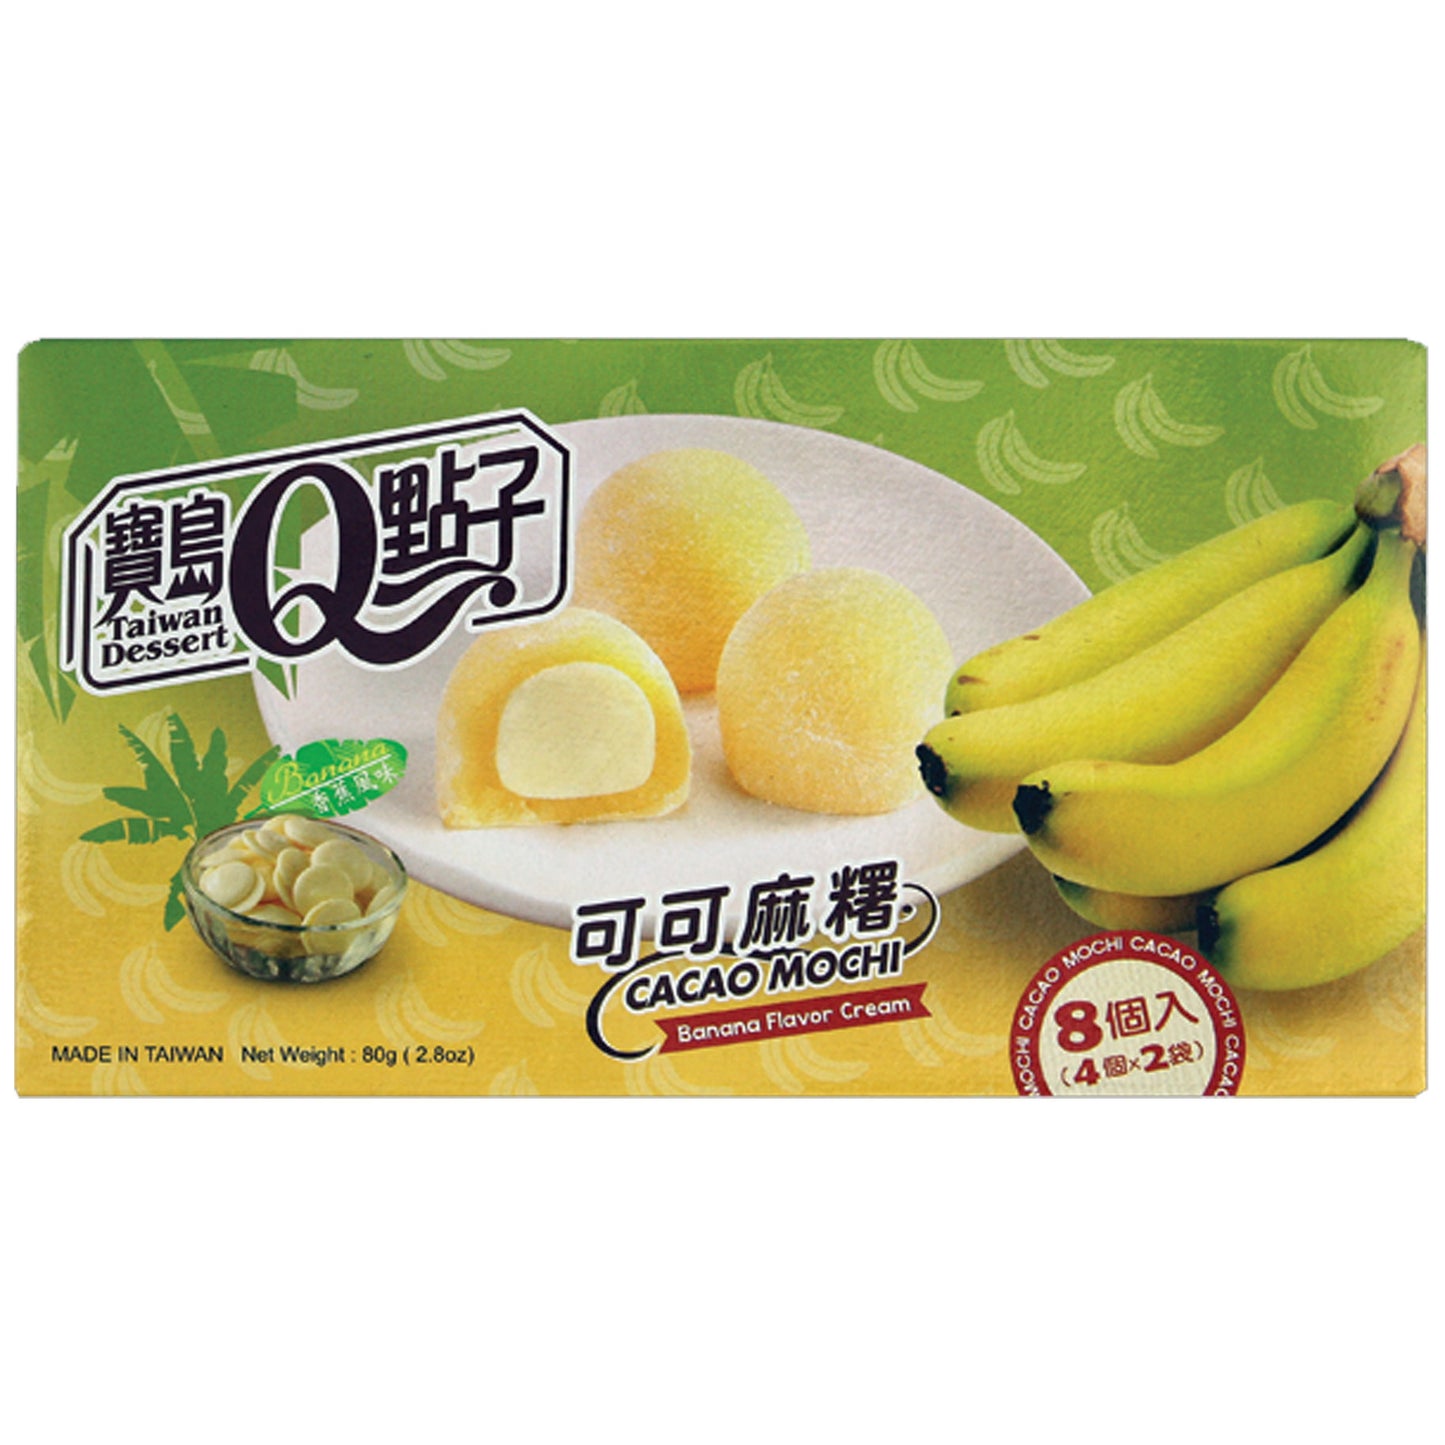 Taiwan Dessert Mico Mochi Banana | 24 x 80g